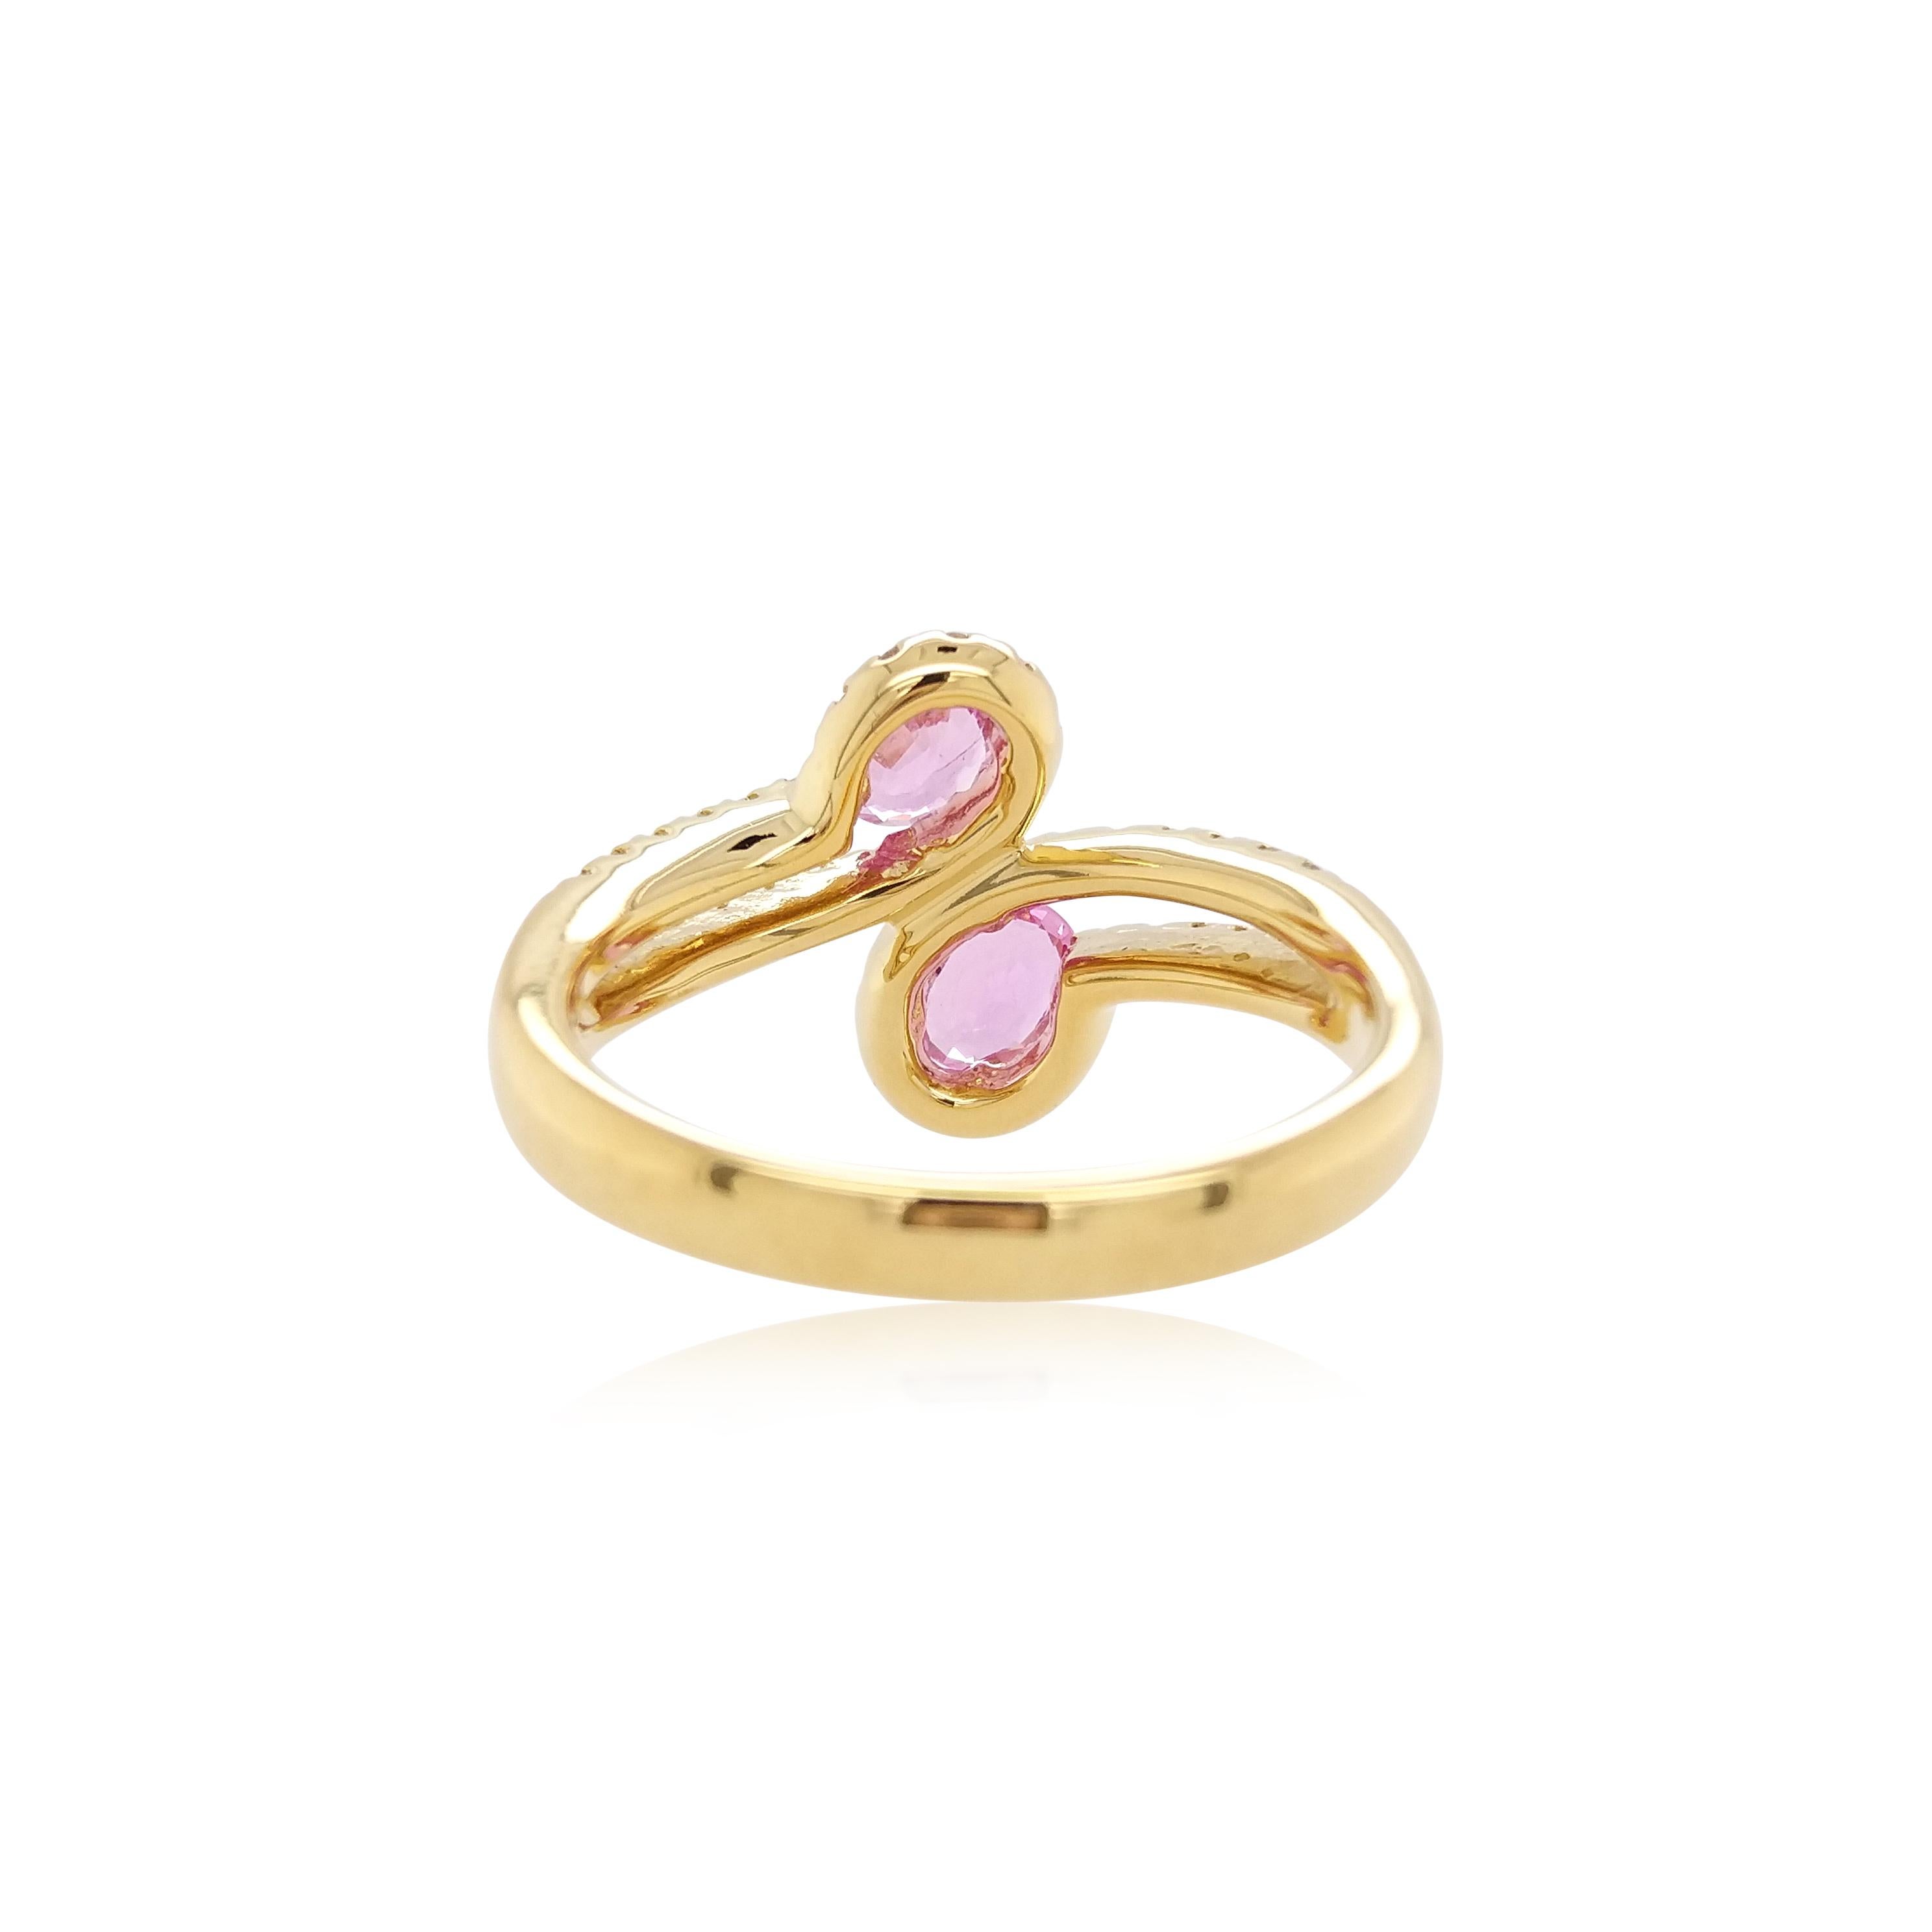 Schönheit im Einfachen: Dieser Toi et Moi-Ring besteht aus zwei wunderschönen rosa Saphiren und einer eleganten Anordnung funkelnder weißer Diamanten. Dieser schillernde und verspielte Ring aus 18 Karat Gelbgold ist ein moderner Klassiker und die